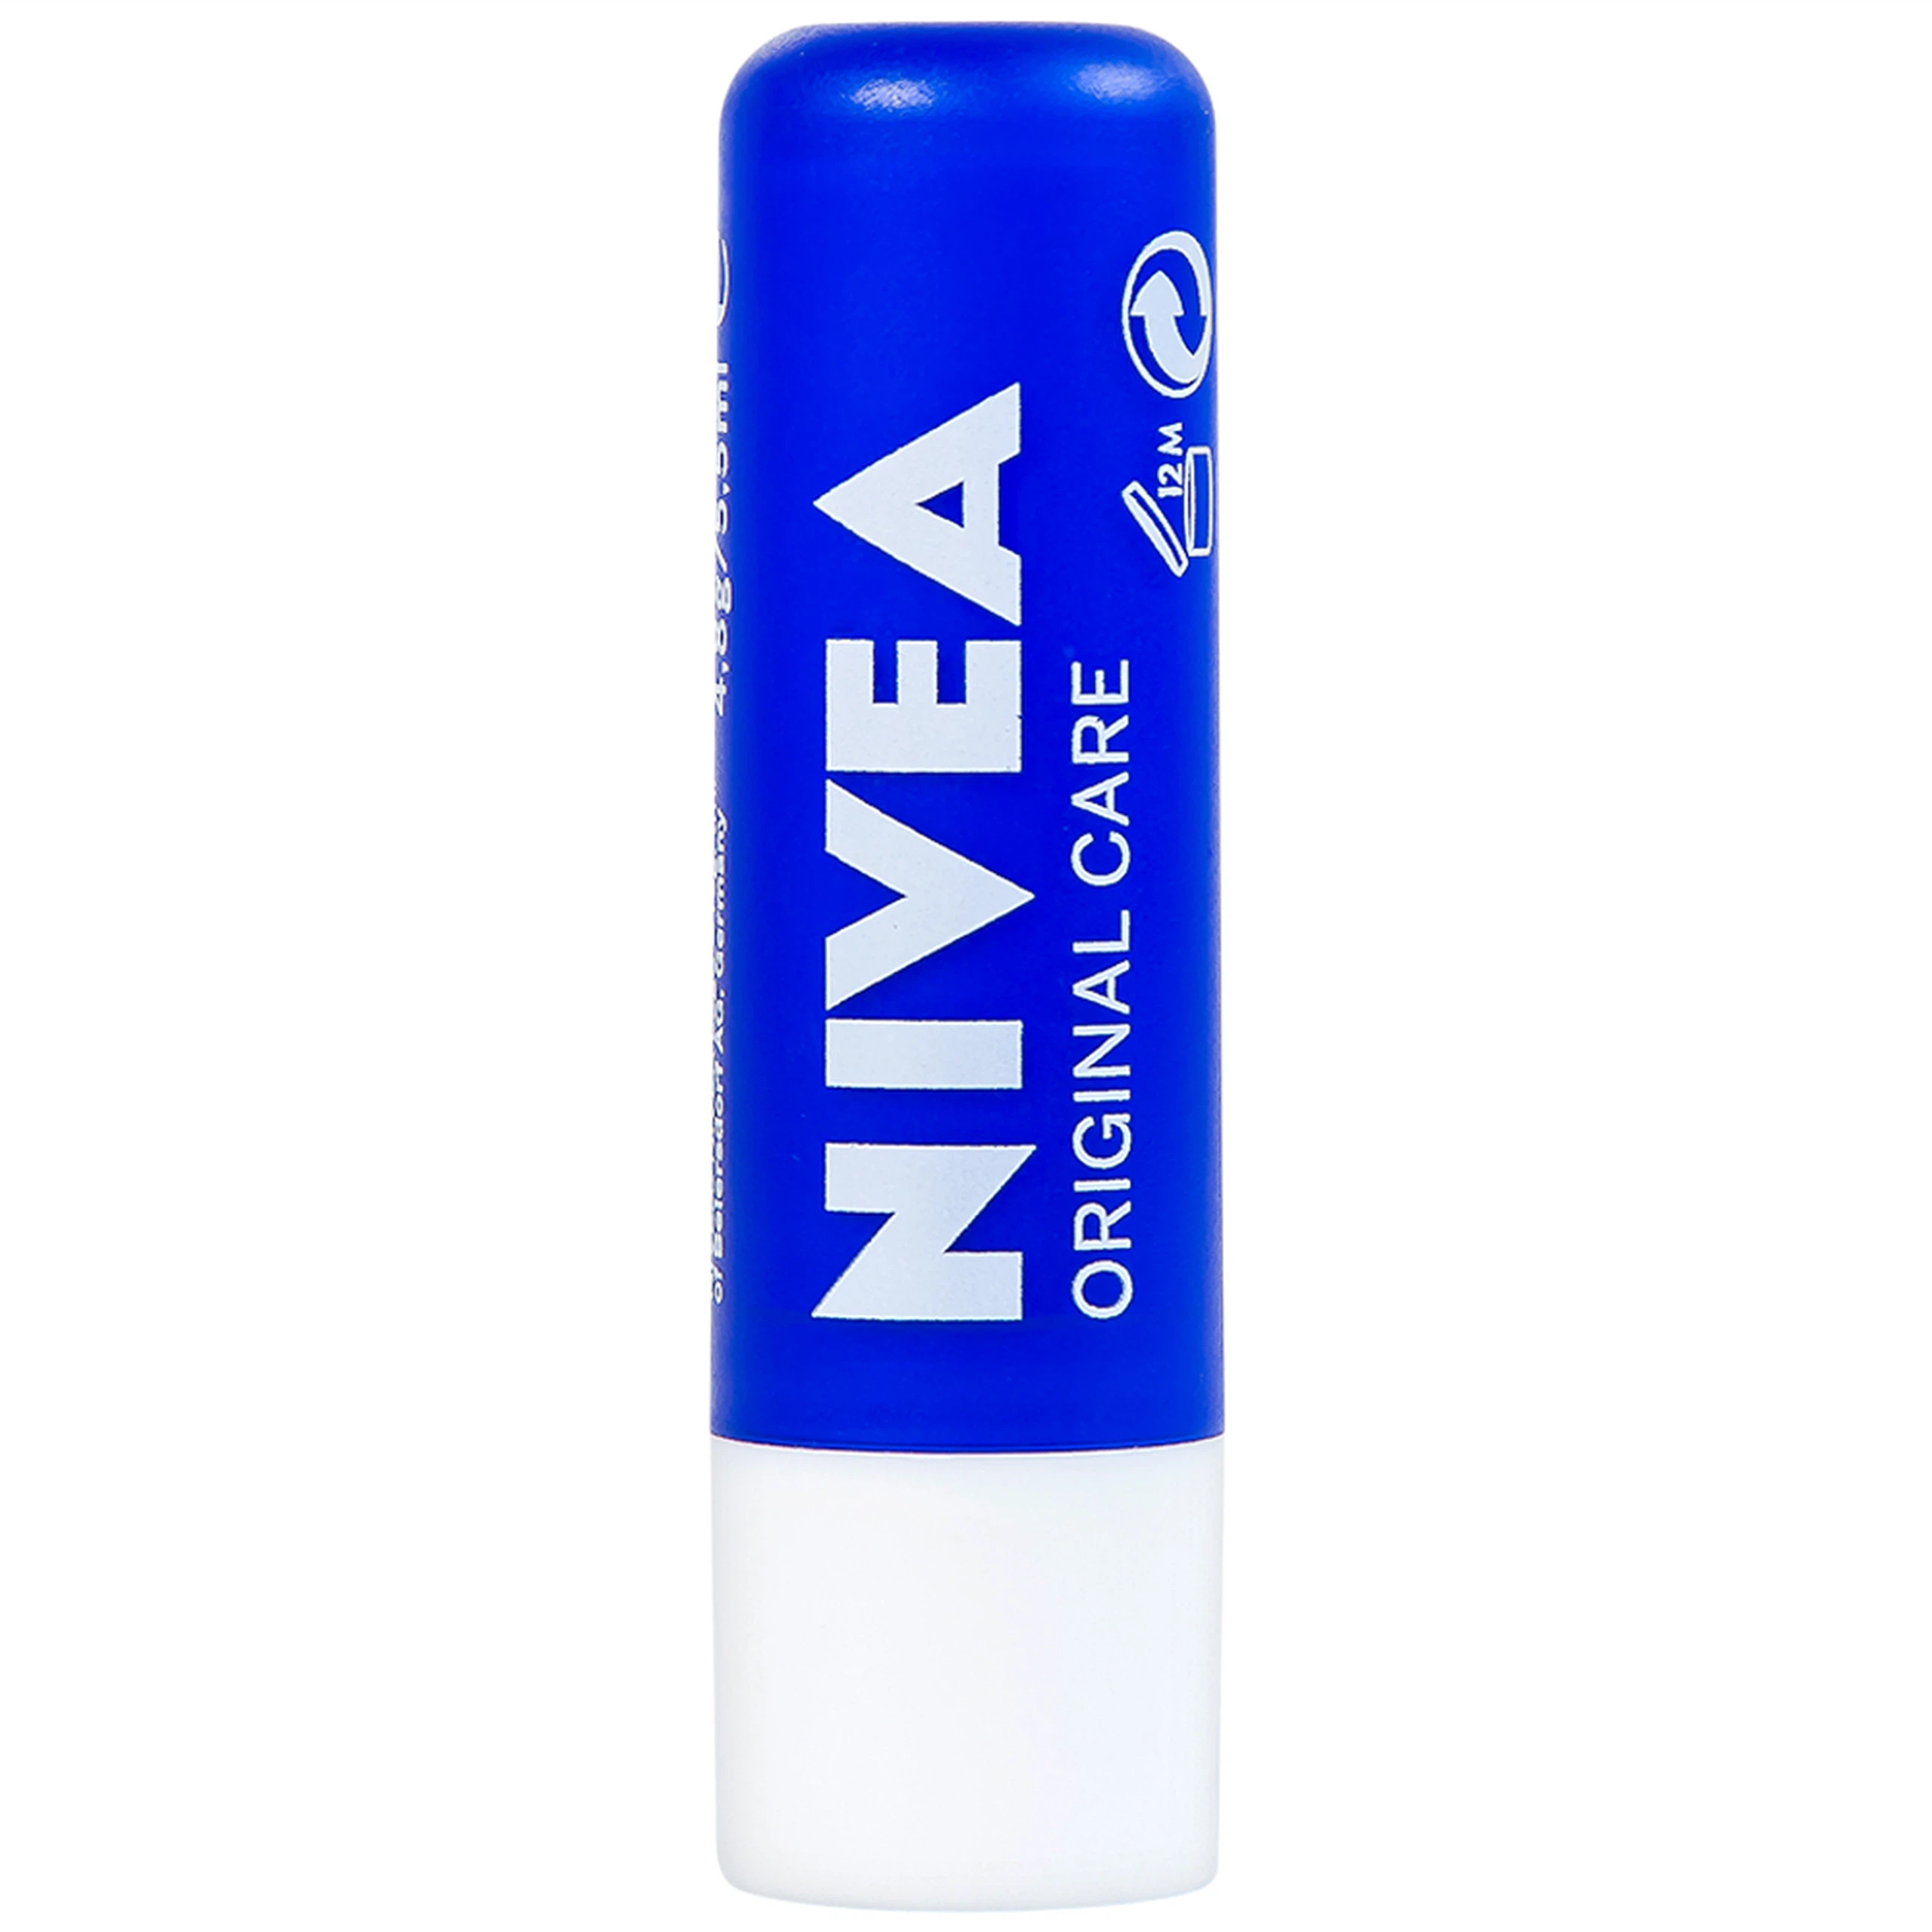 Son dưỡng ẩm Nivea Original Care dưỡng và duy trì độ ẩm cho môi (4.8g)